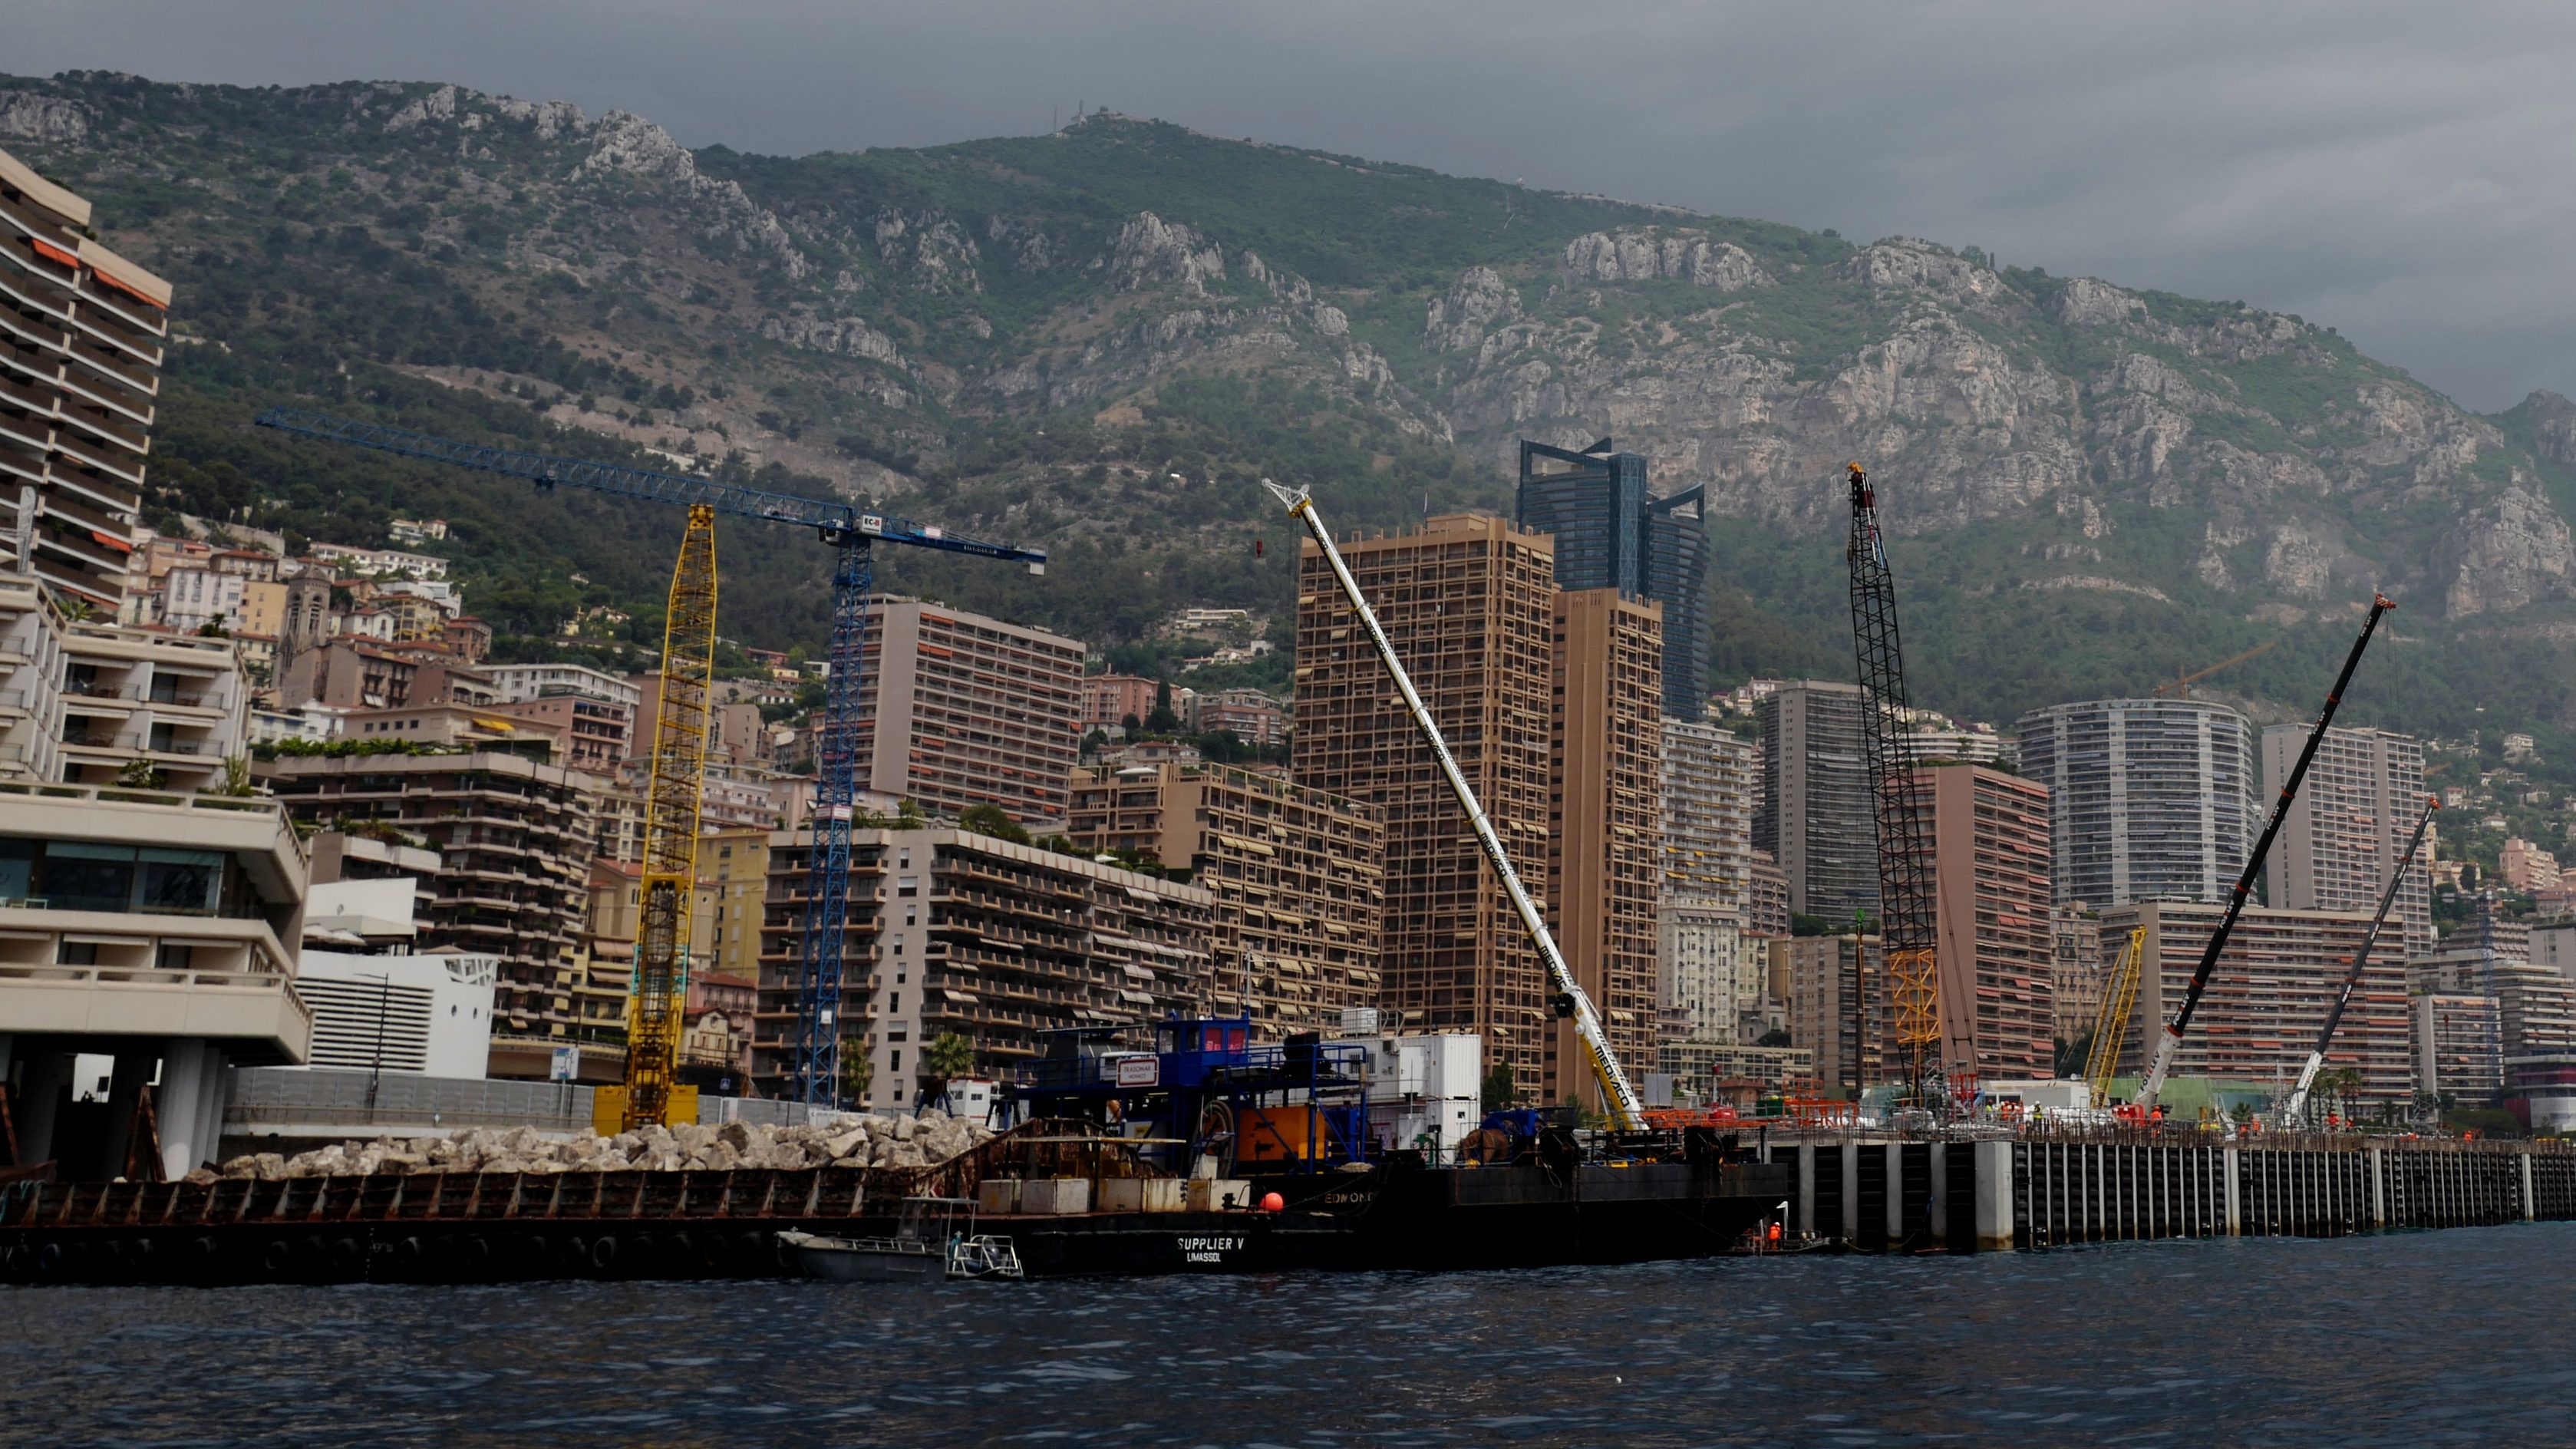 Ingatlanfejlesztési projekt keretében növelik Monaco területét